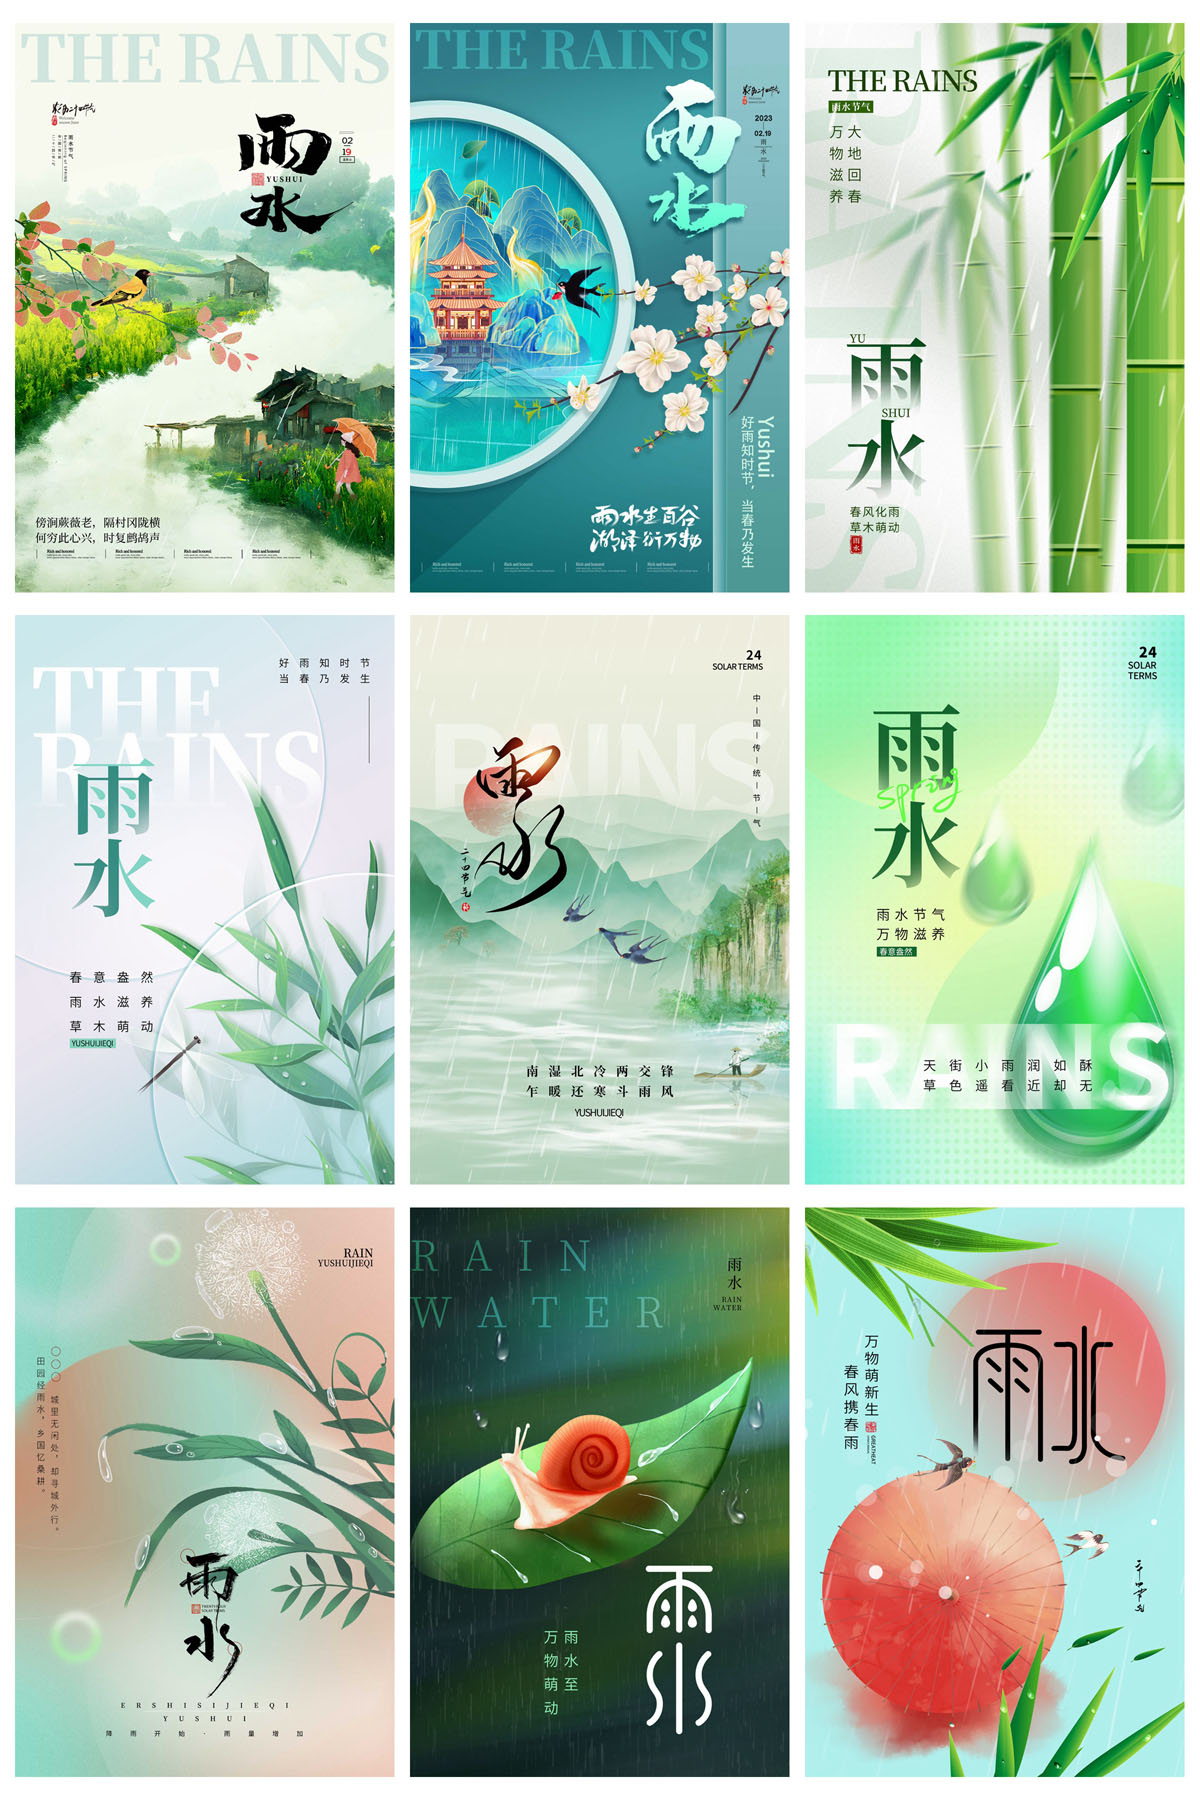 43款24节气雨水春天节日宣传海报模板PSD设计素材 设计素材 第9张